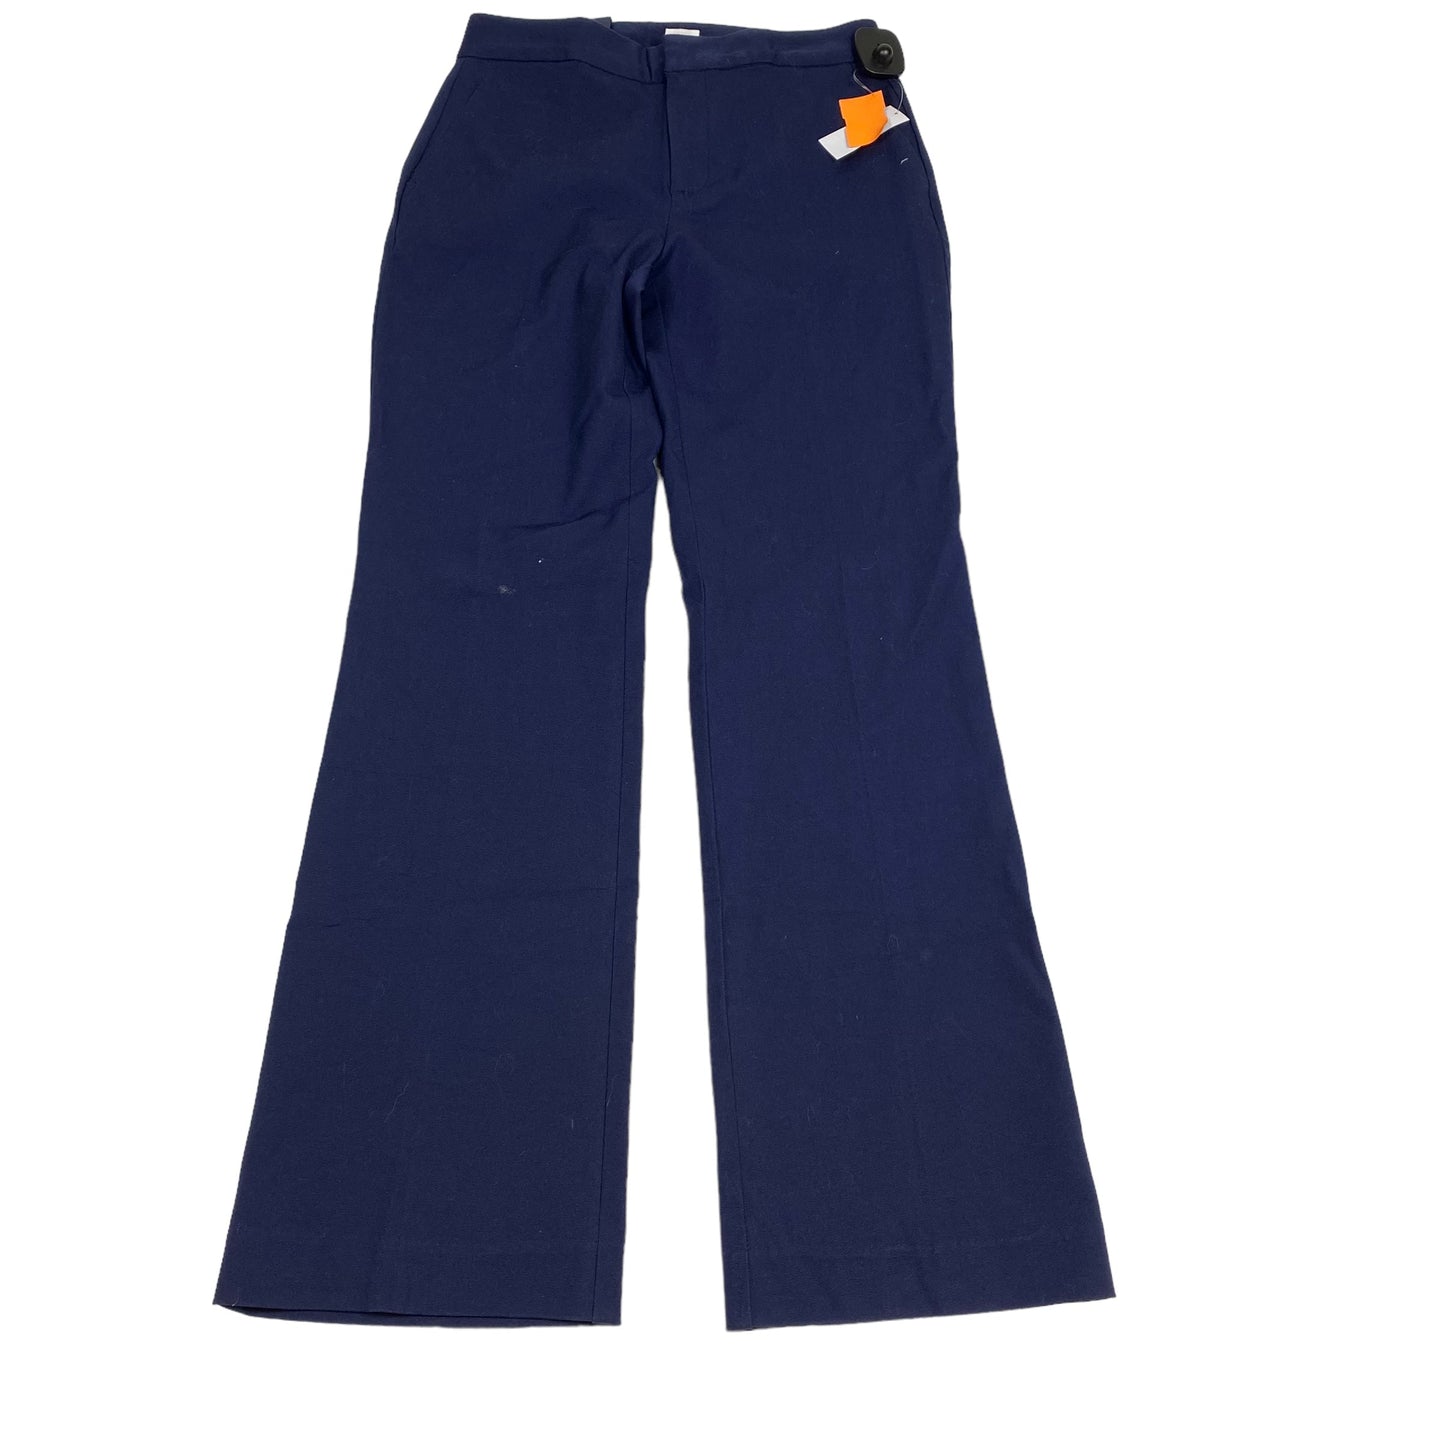 Pants Work/dress By Gap  Size: 2